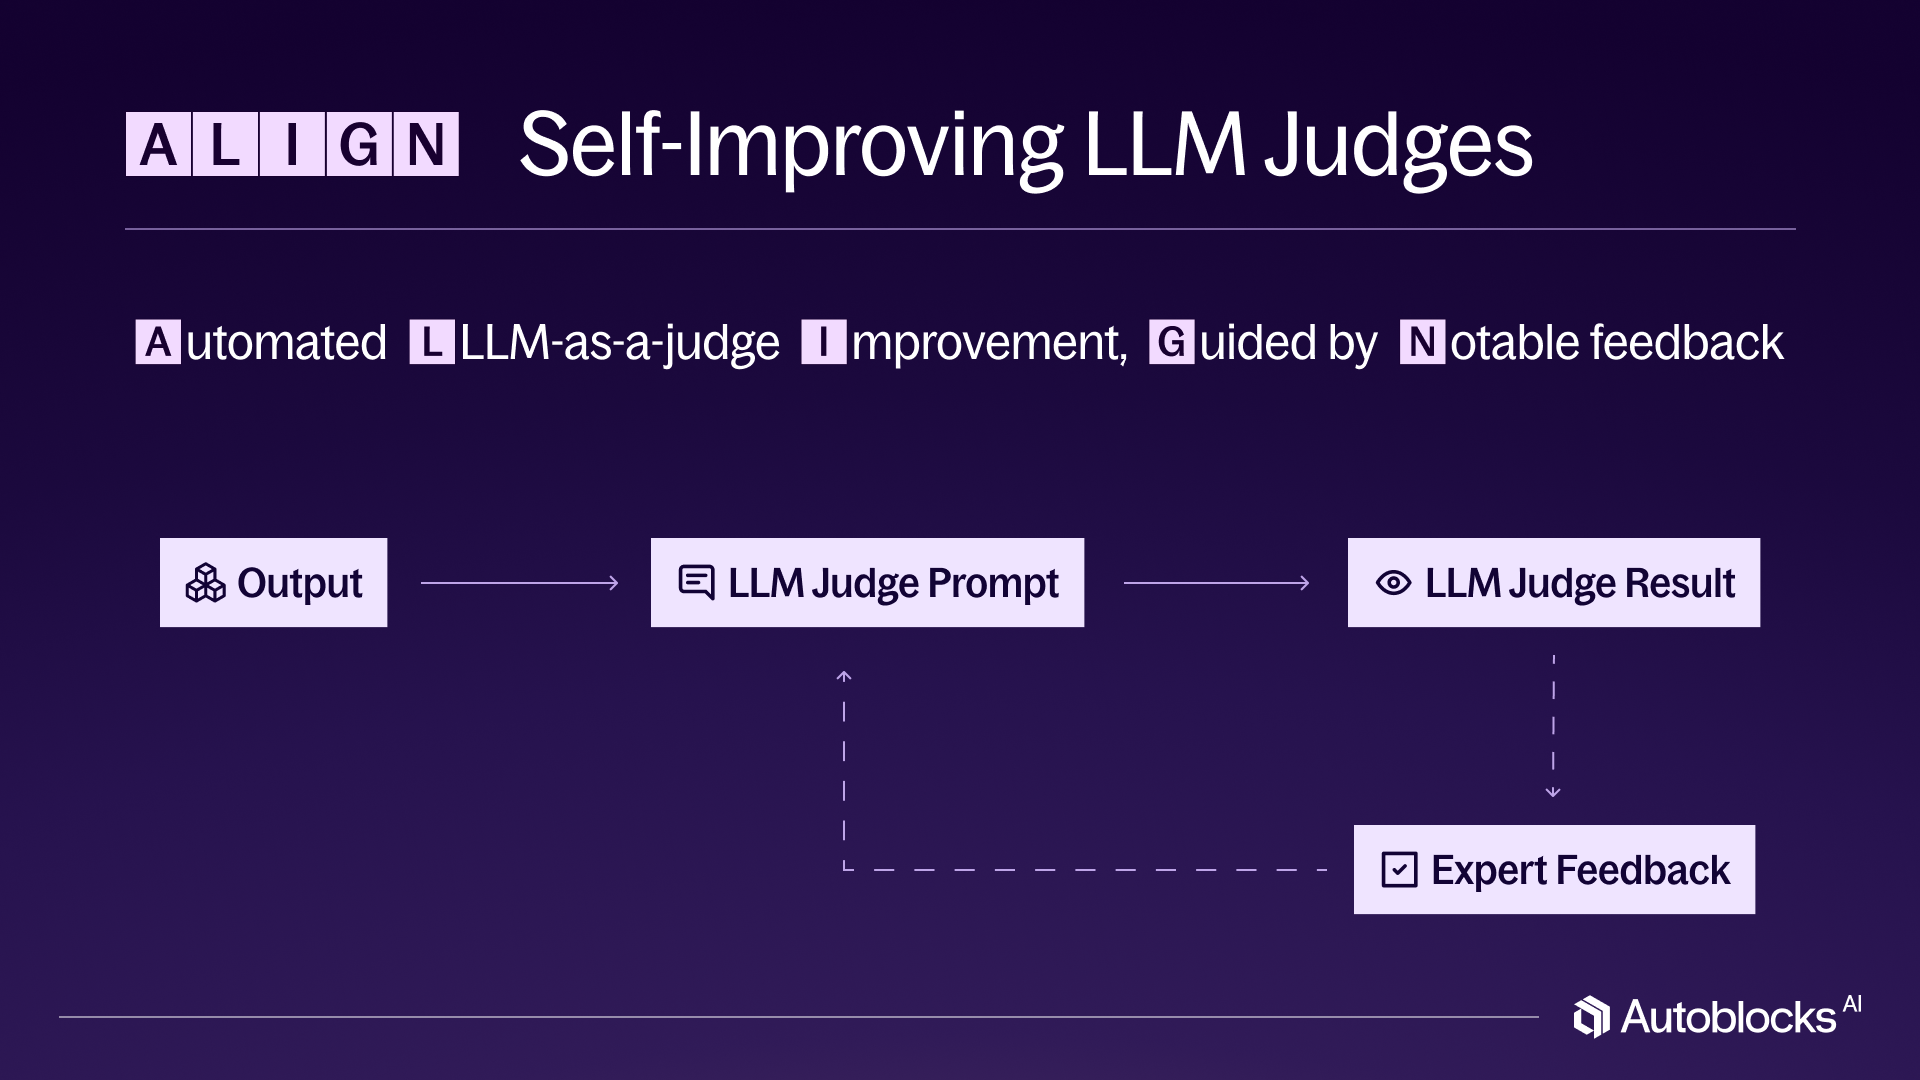 Introducing Self-Improving LLM Judges in Autoblocks Image